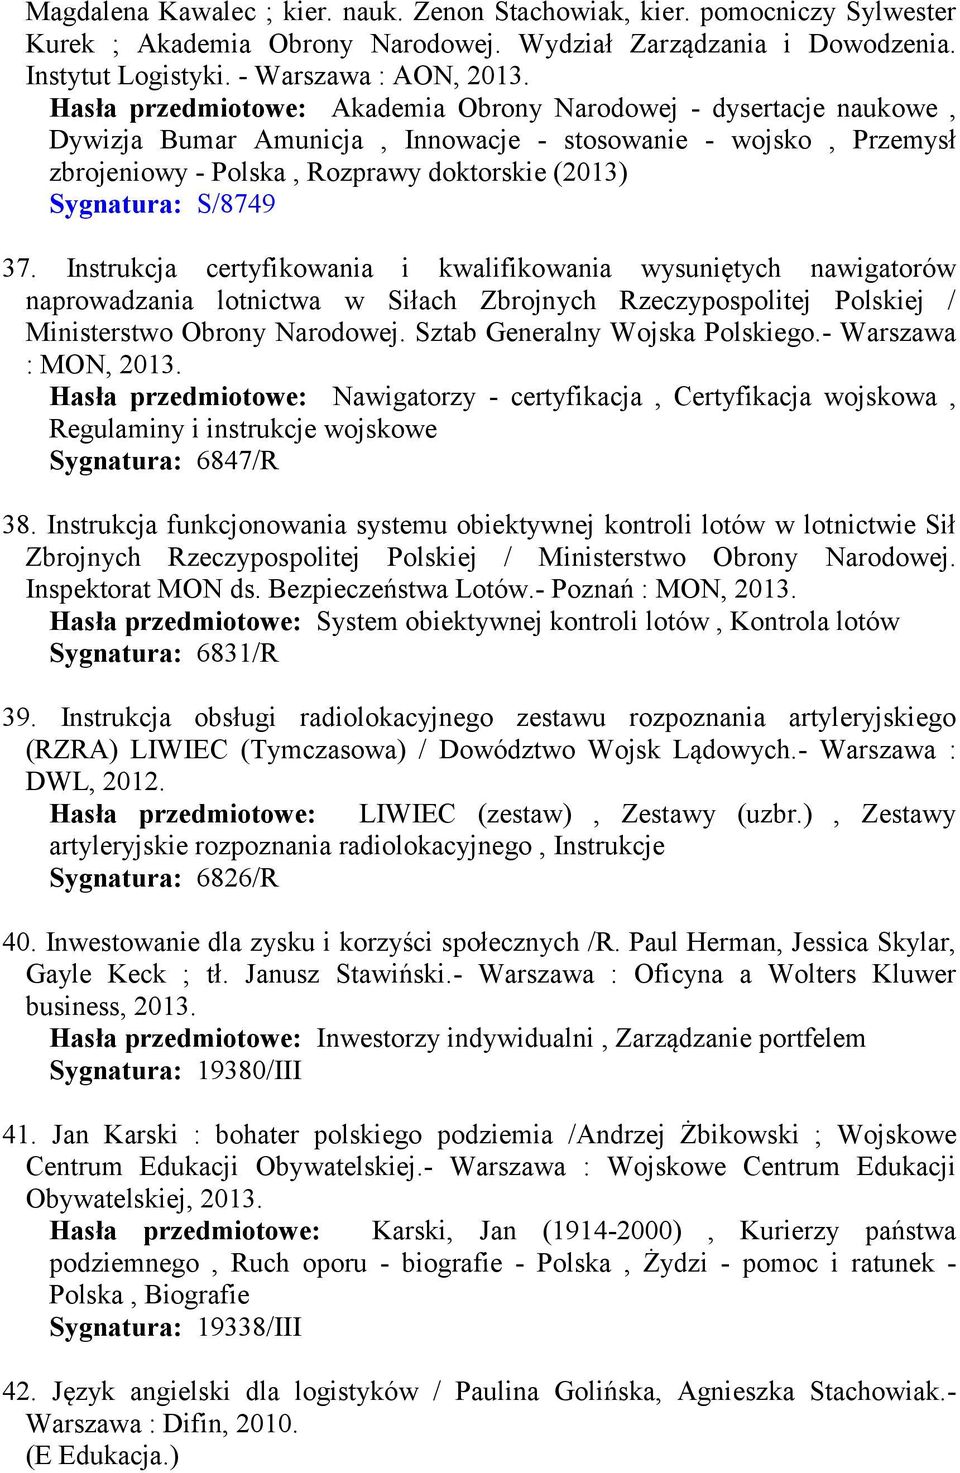 Instrukcja certyfikowania i kwalifikowania wysuniętych nawigatorów naprowadzania lotnictwa w Siłach Zbrojnych Rzeczypospolitej Polskiej / Ministerstwo Obrony Narodowej.